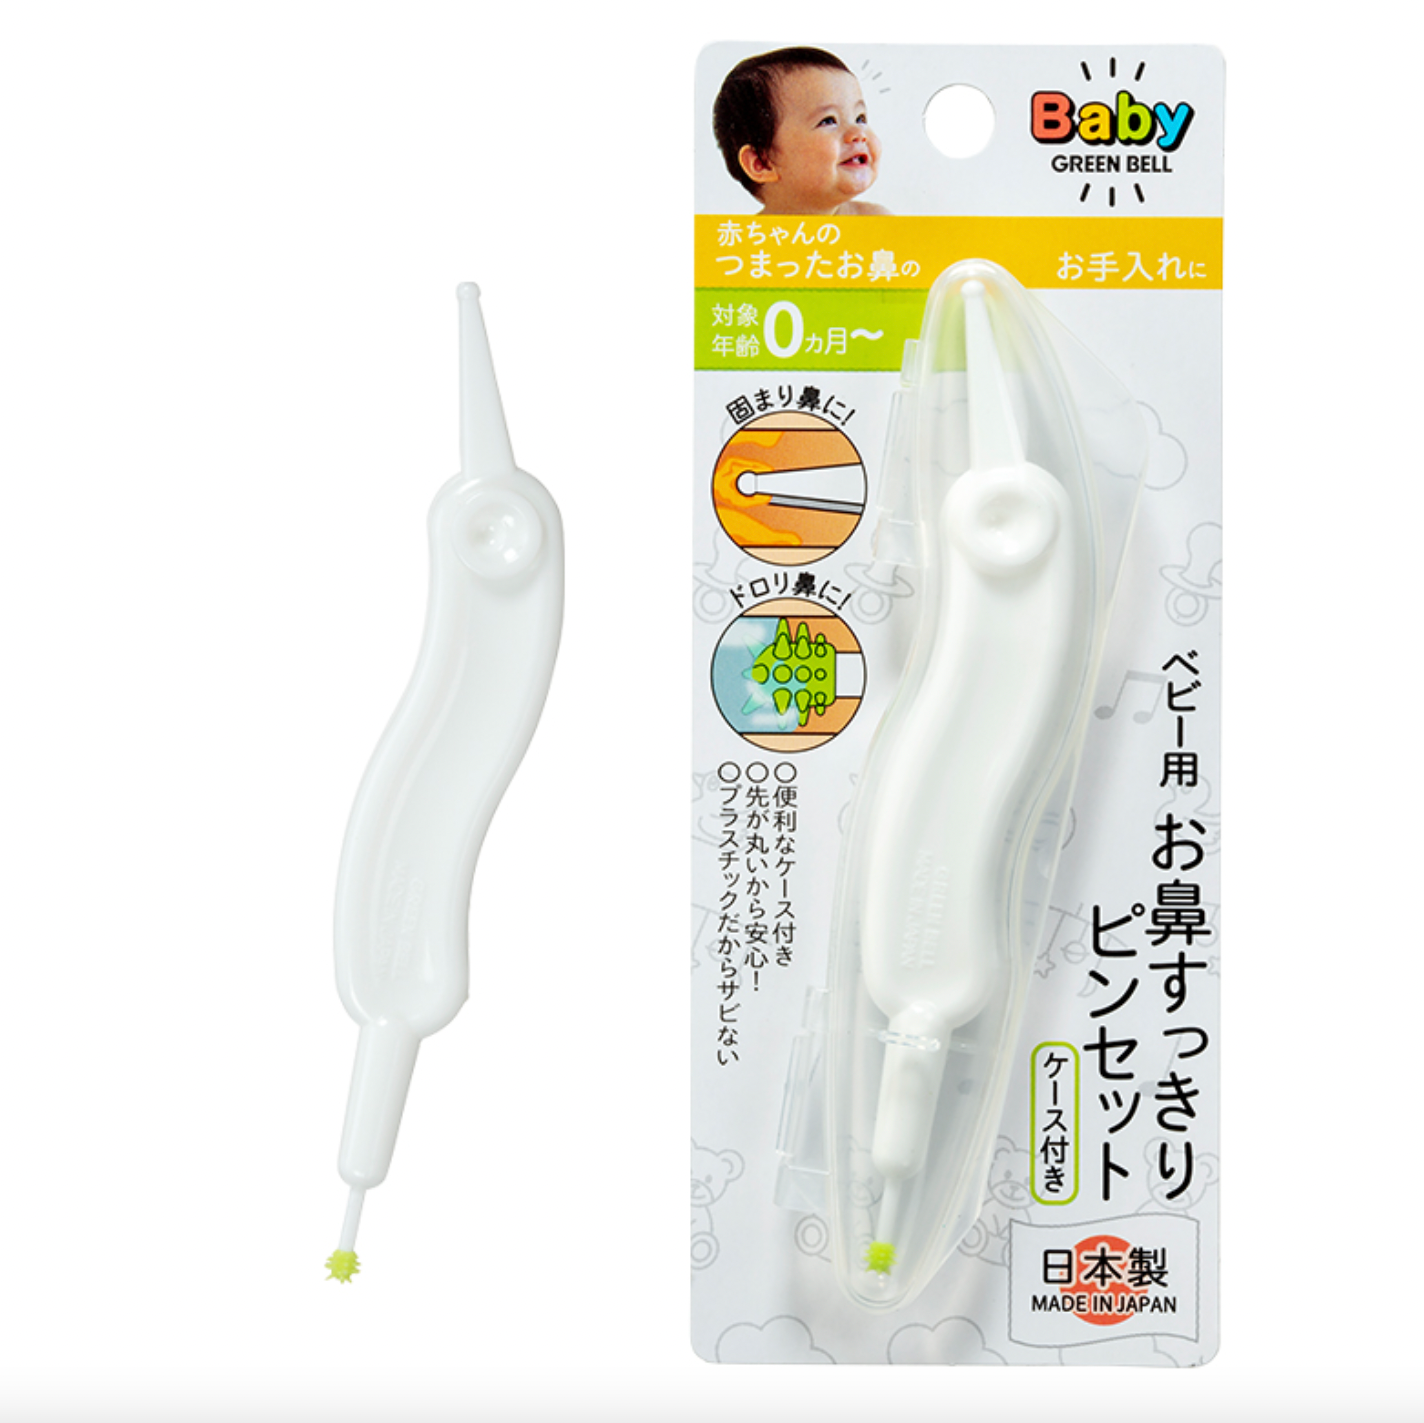 GREEN BELL 嬰兒鼻腔清潔器